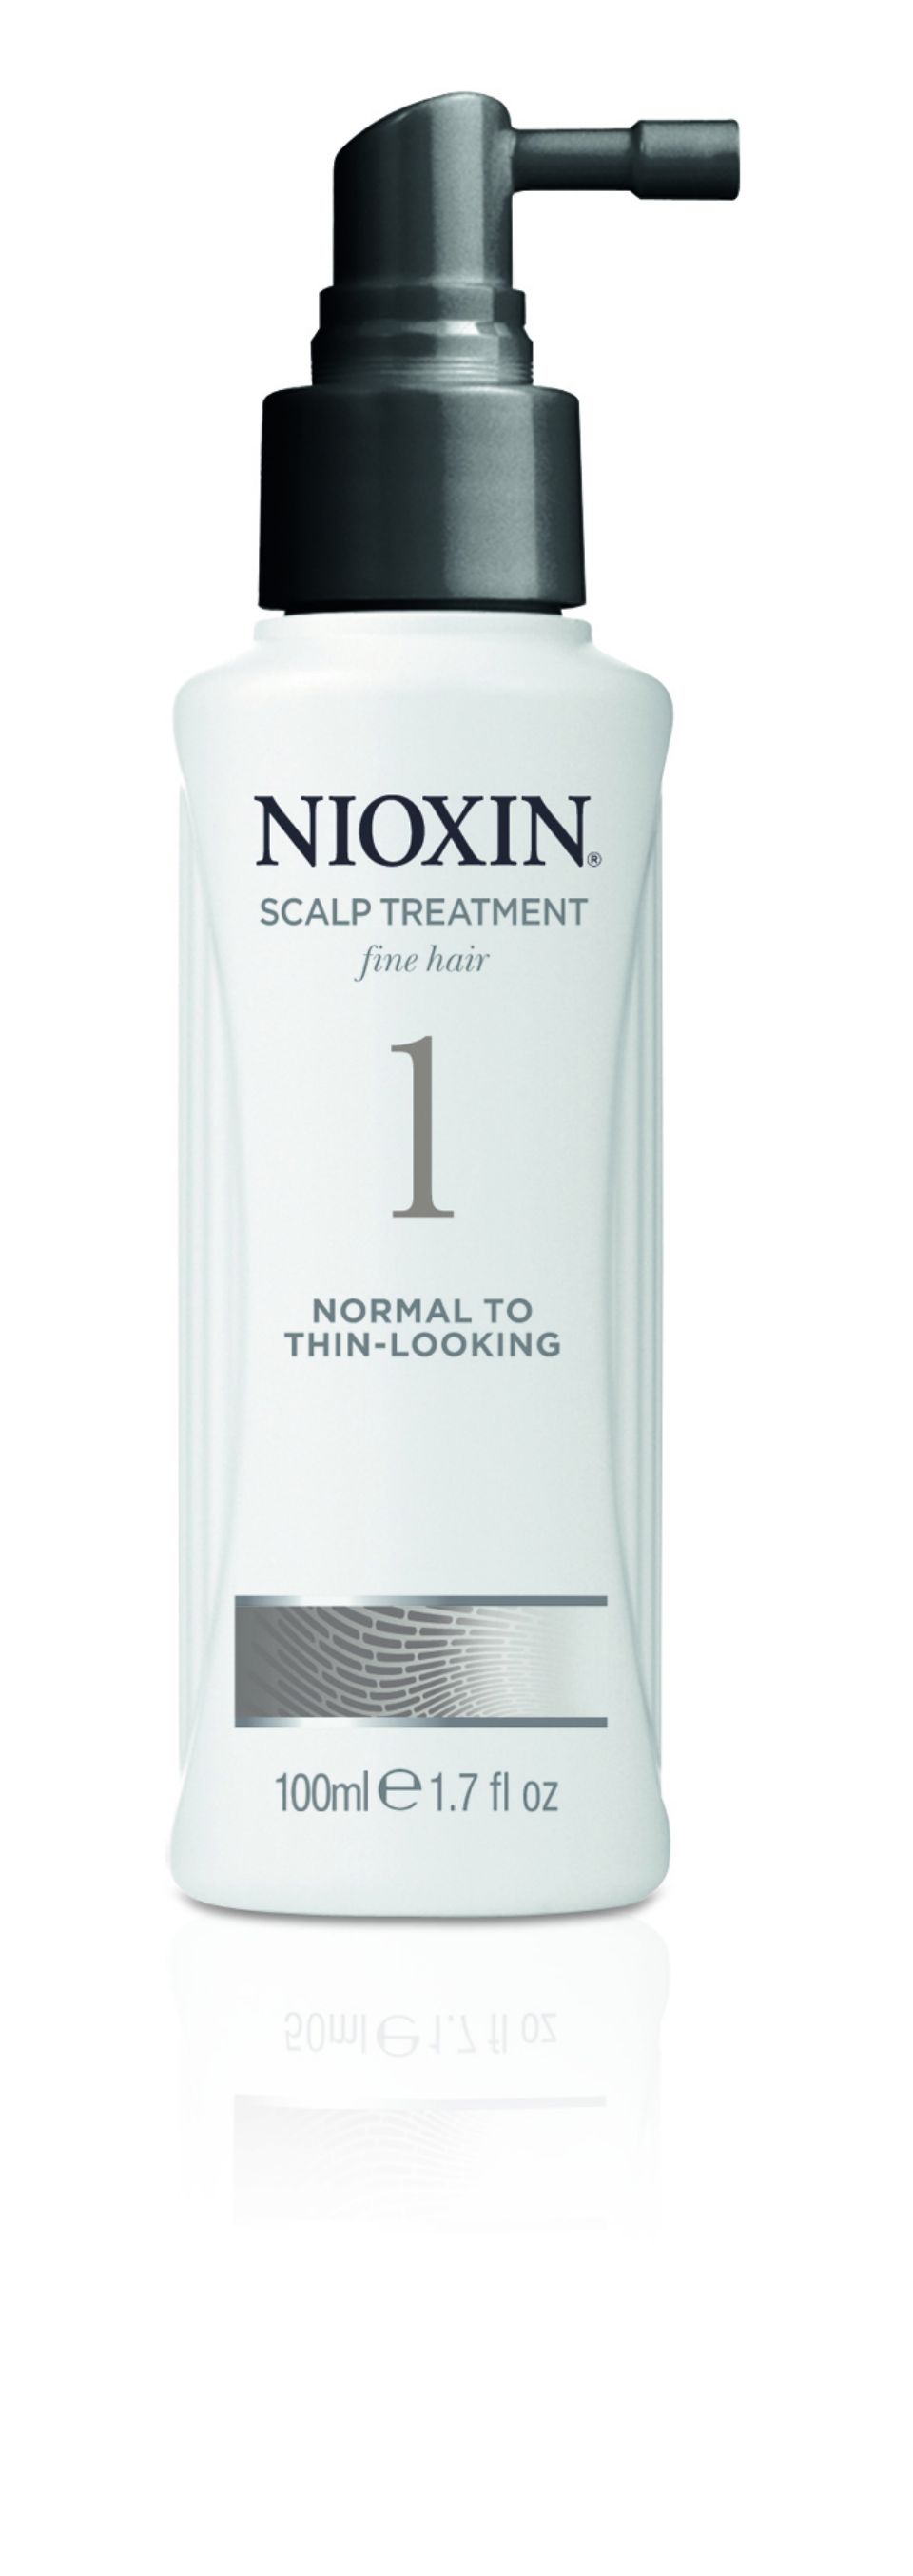 Nioxin wax